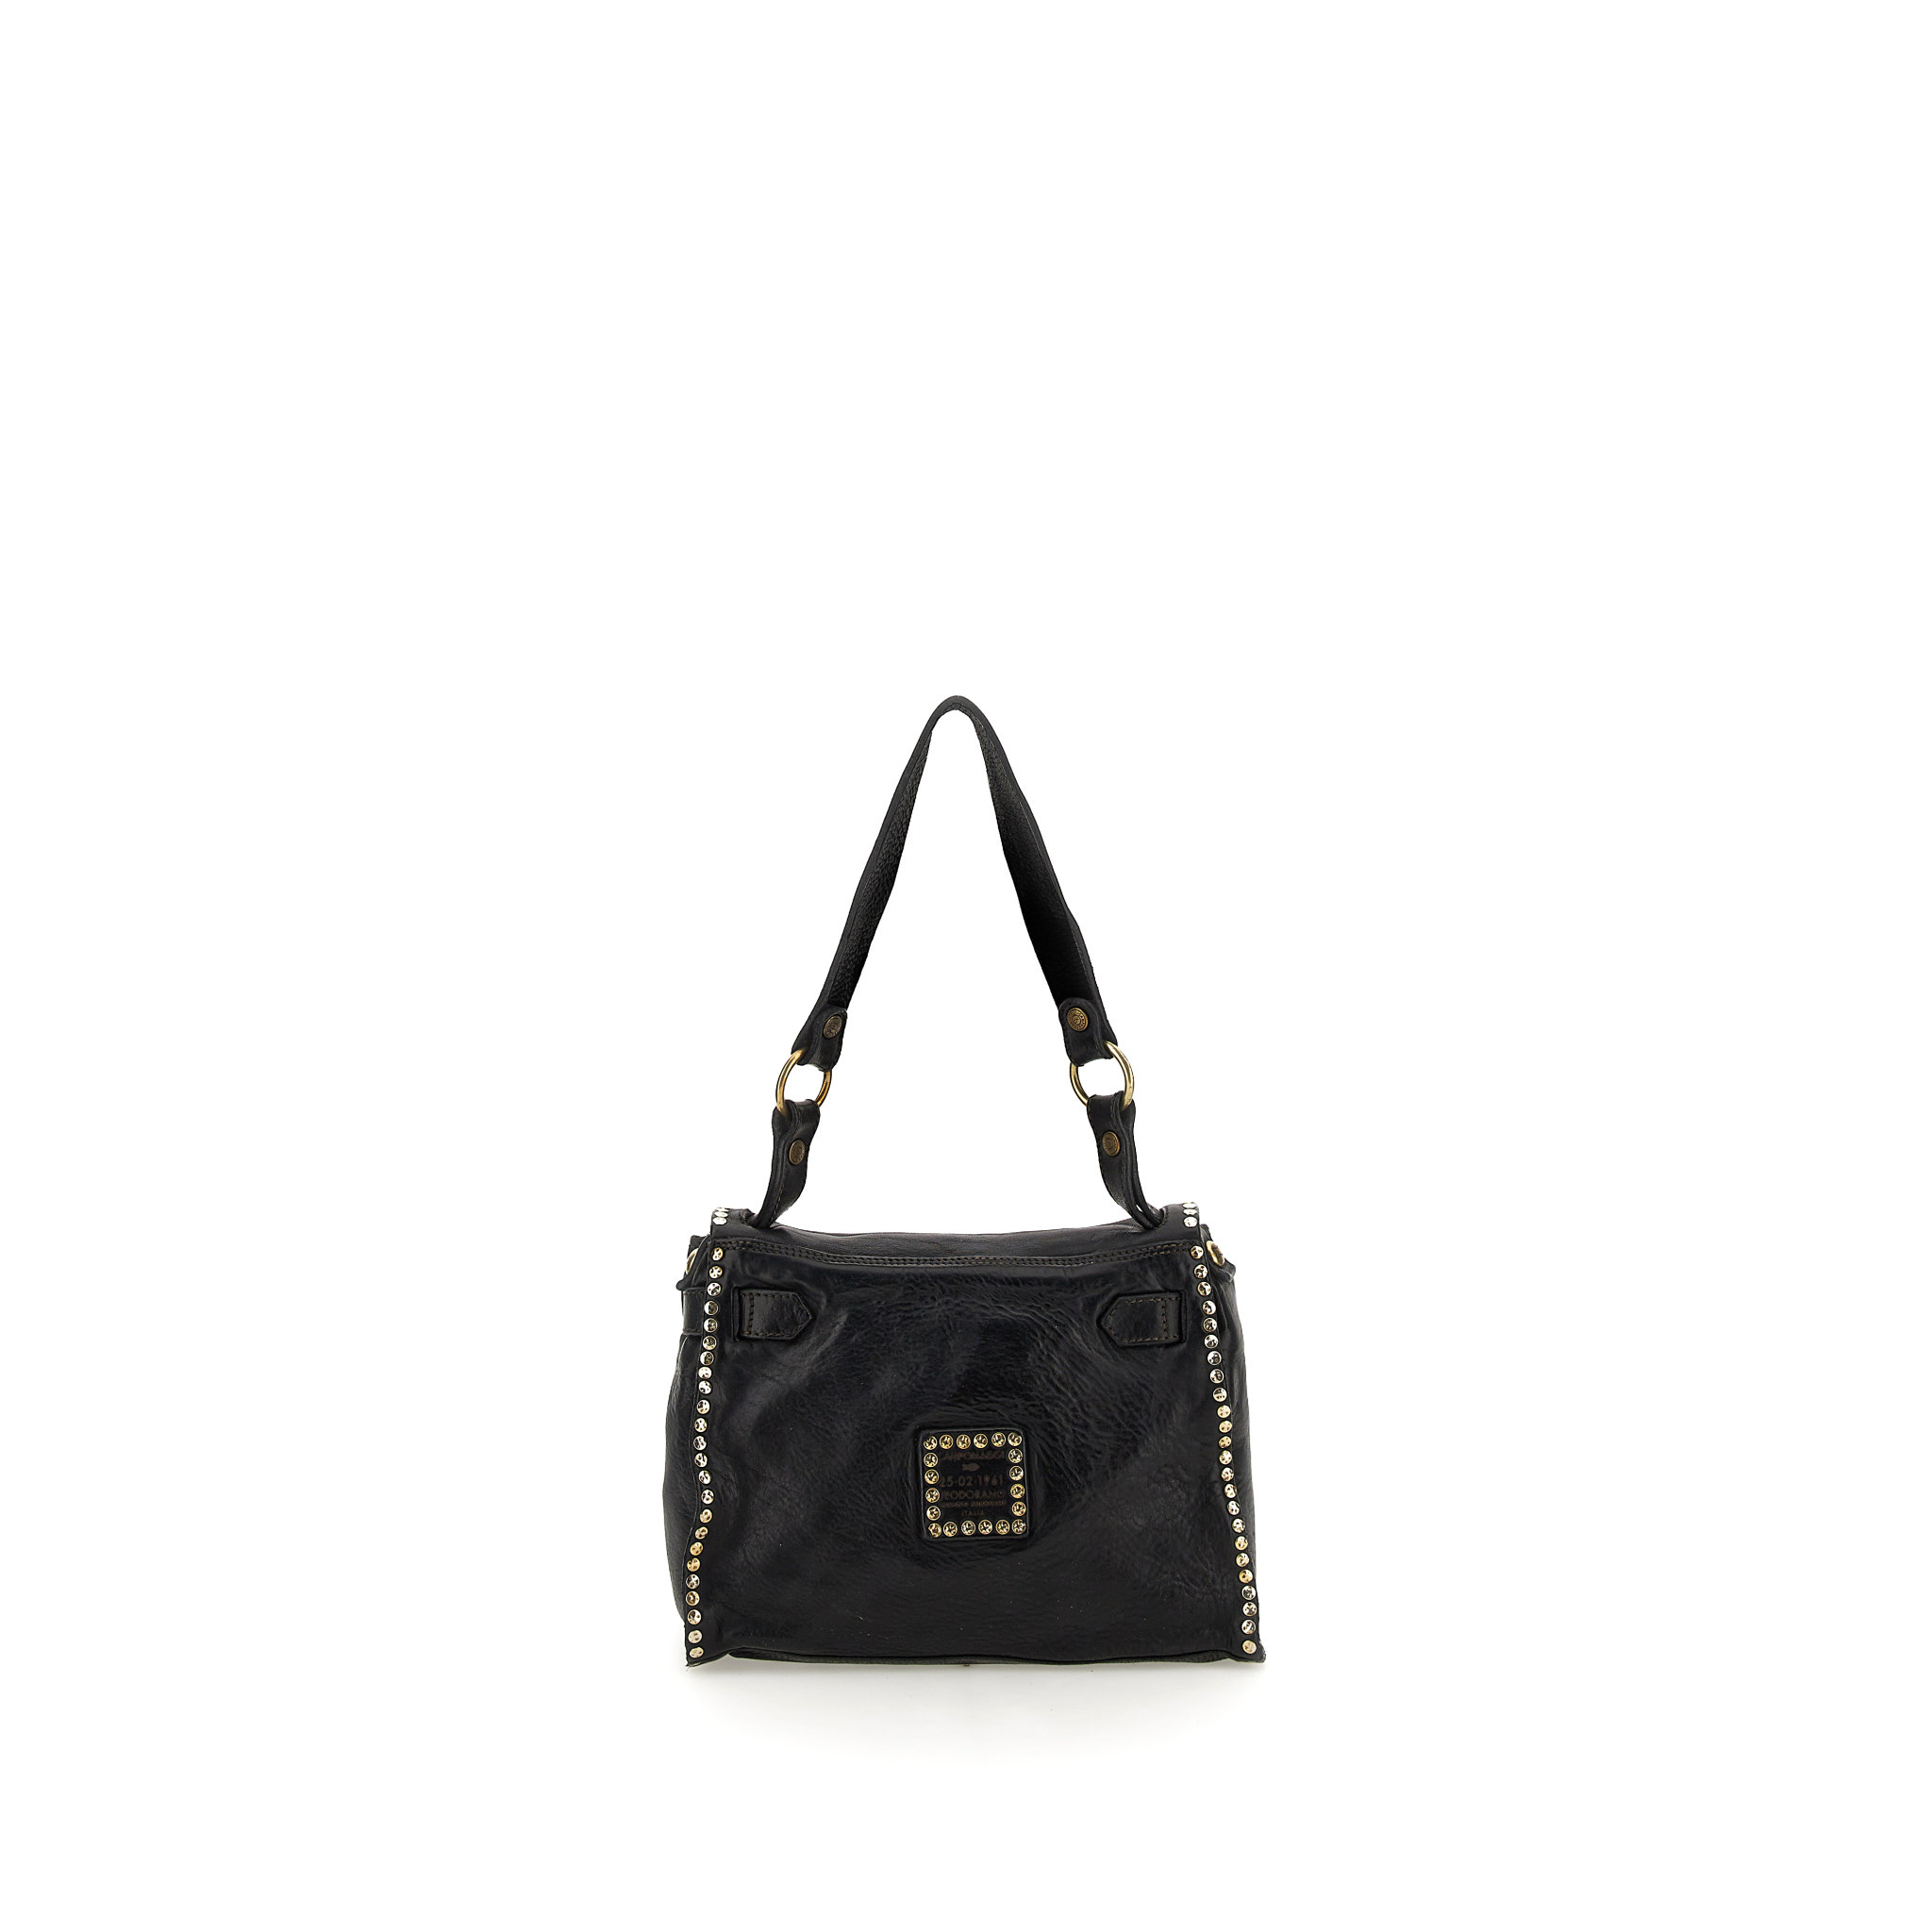 Campomaggi Shoulder bag. Leather + Studs. P/D Black.